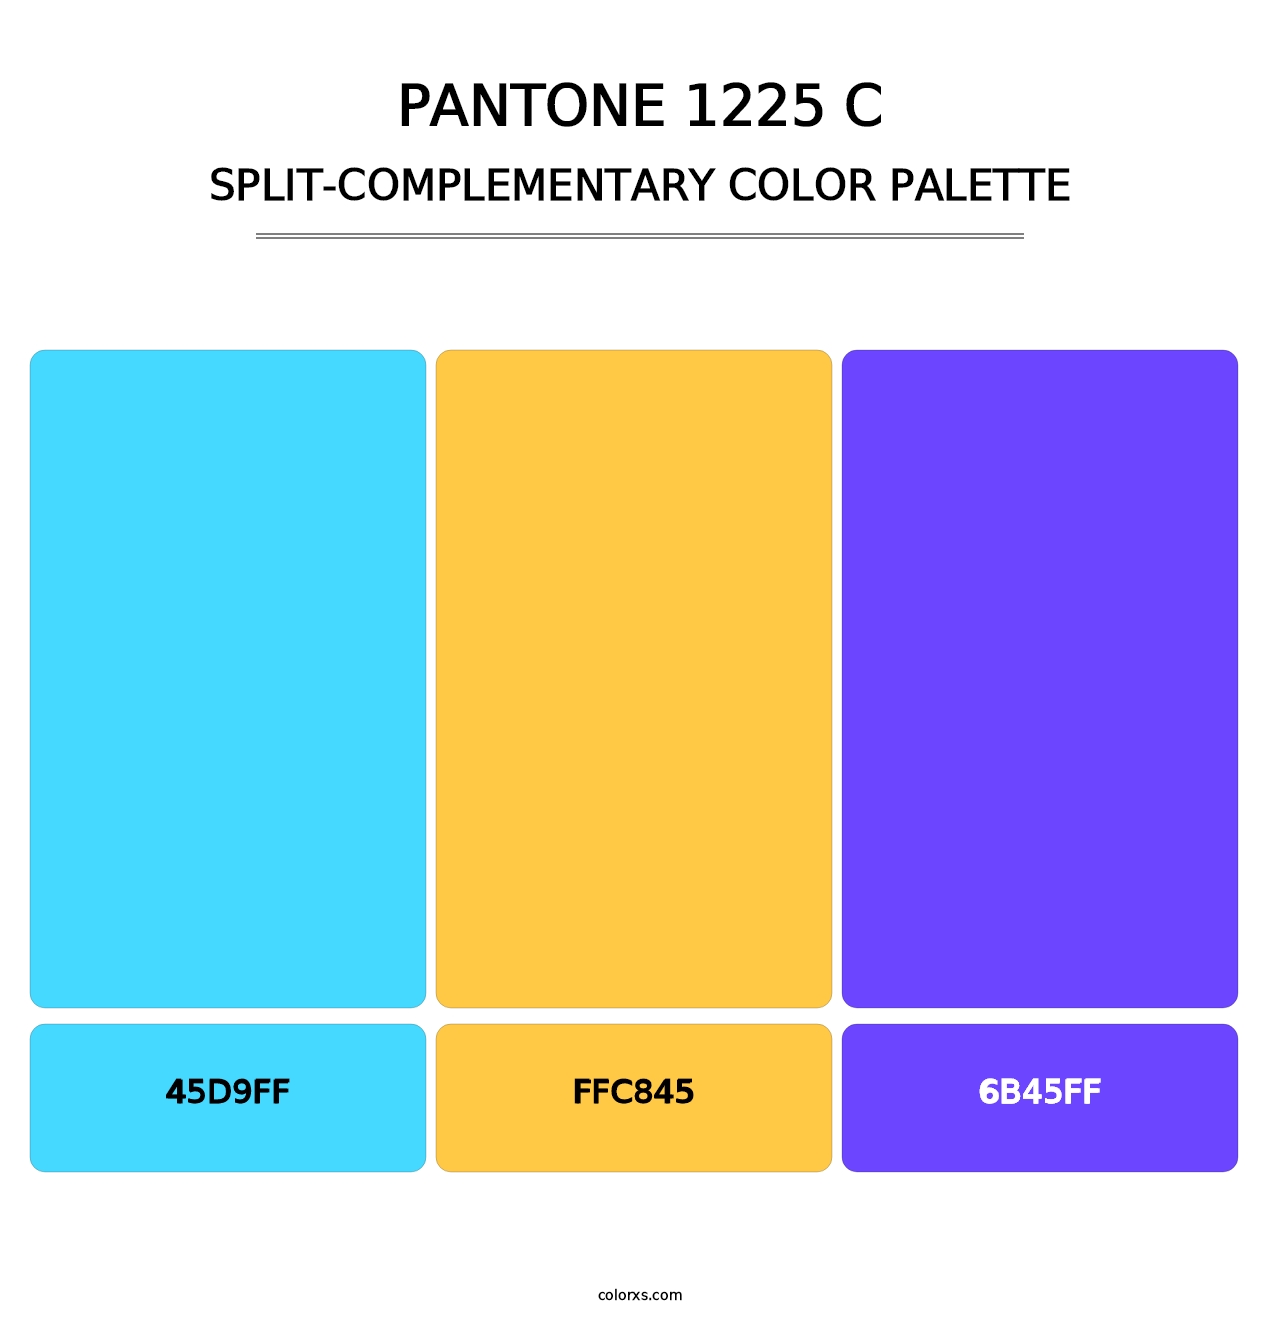 PANTONE 1225 C - Split-Complementary Color Palette